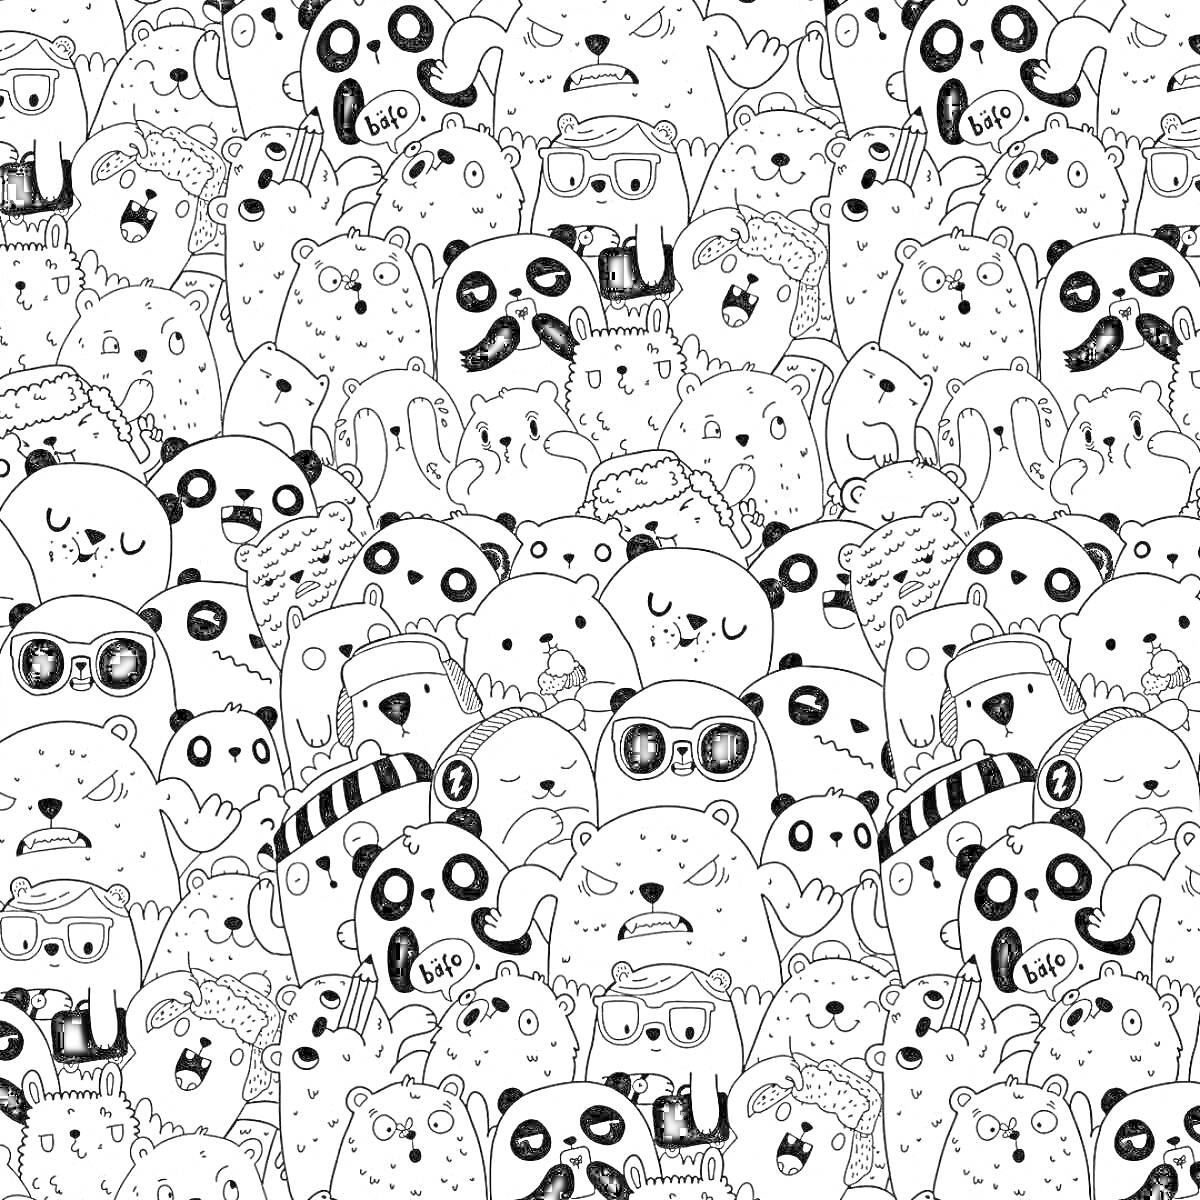 Раскраска Разнообразные панды с аксессуарами, некоторые с банданами, очками, в шляпах, держащими сердце, с милыми выражениями лиц